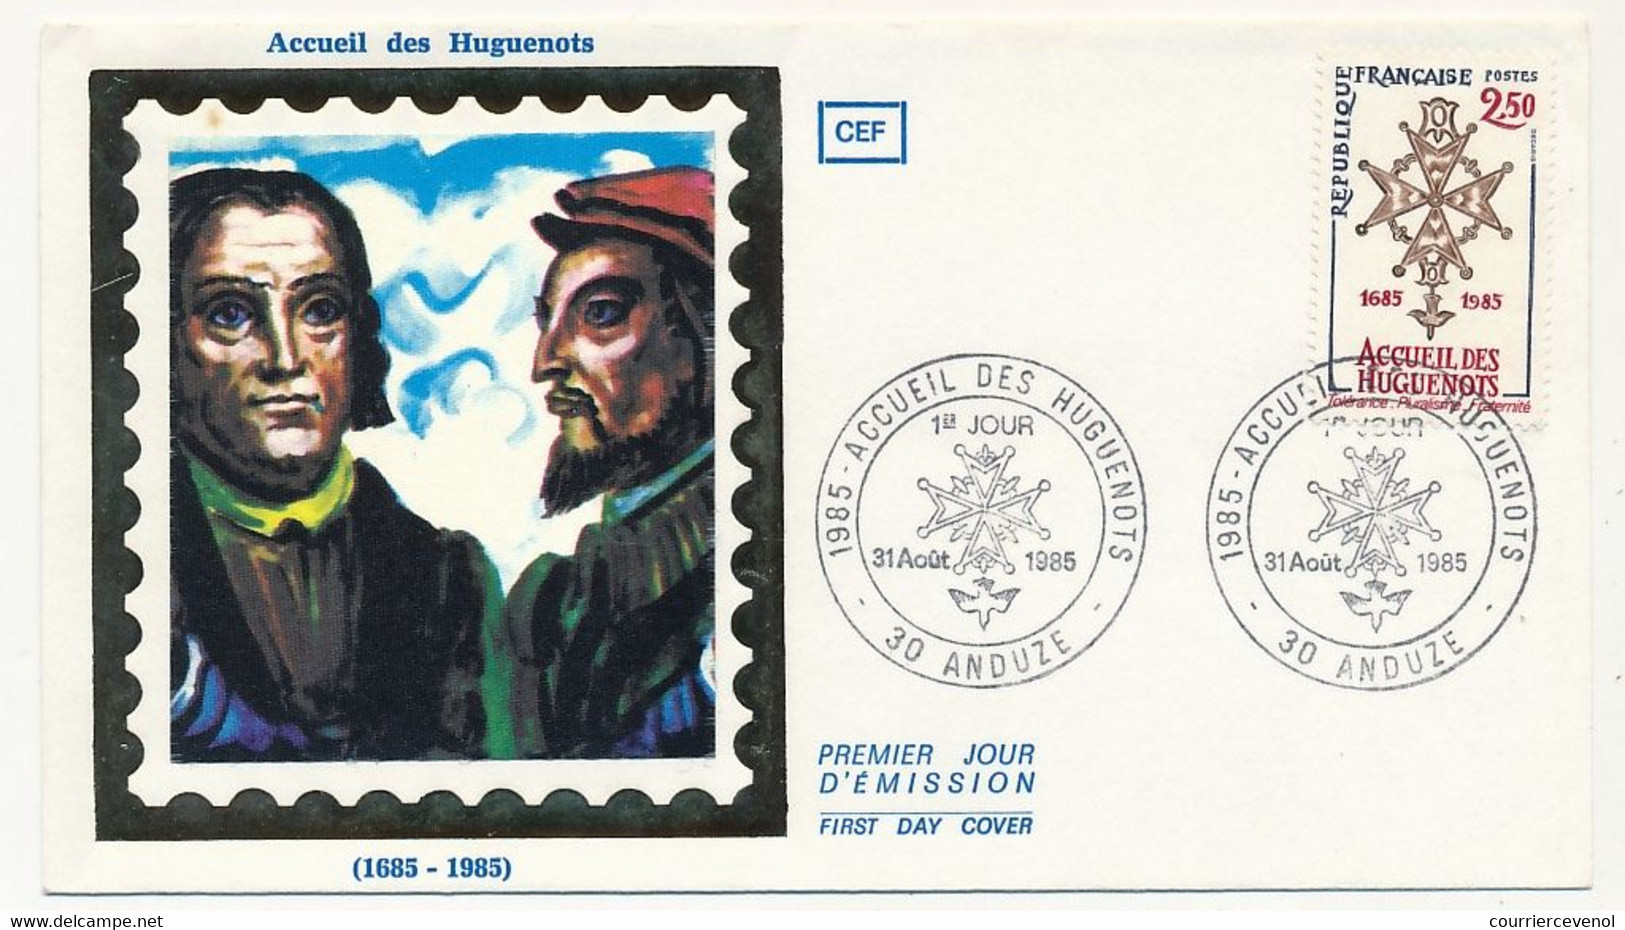 FRANCE - Enveloppe FDC Soie - 2,50 Accueil Des Huguenots - 30 ANDUZE - 31 Aout 1985 - Christendom